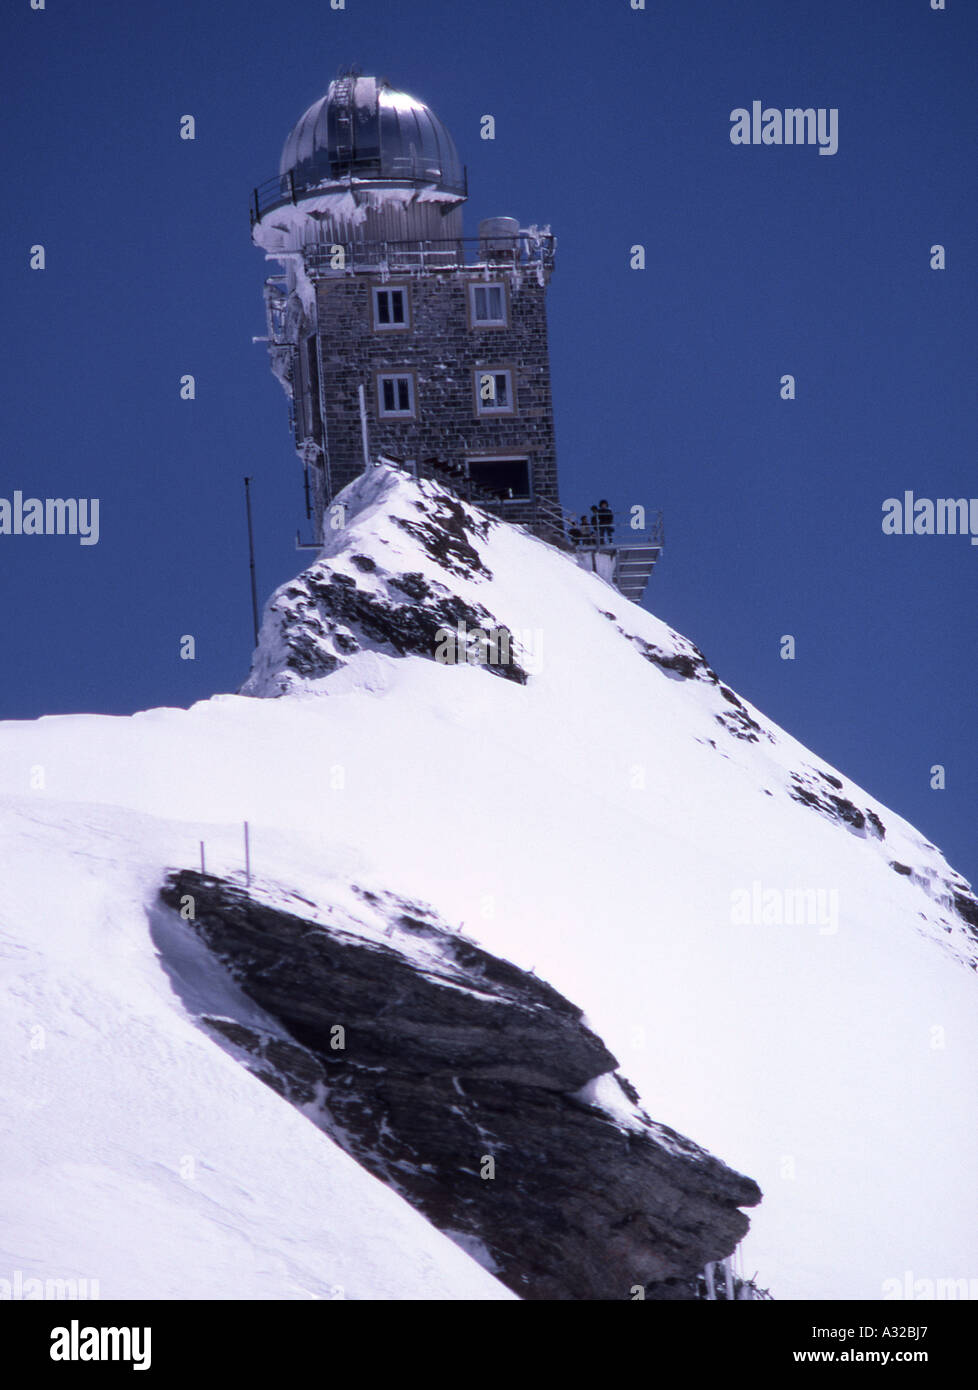 Sphinx-Wetterstation und Meteorologischen Observatorium am Jungfraujoch,  Schweiz Stockfotografie - Alamy